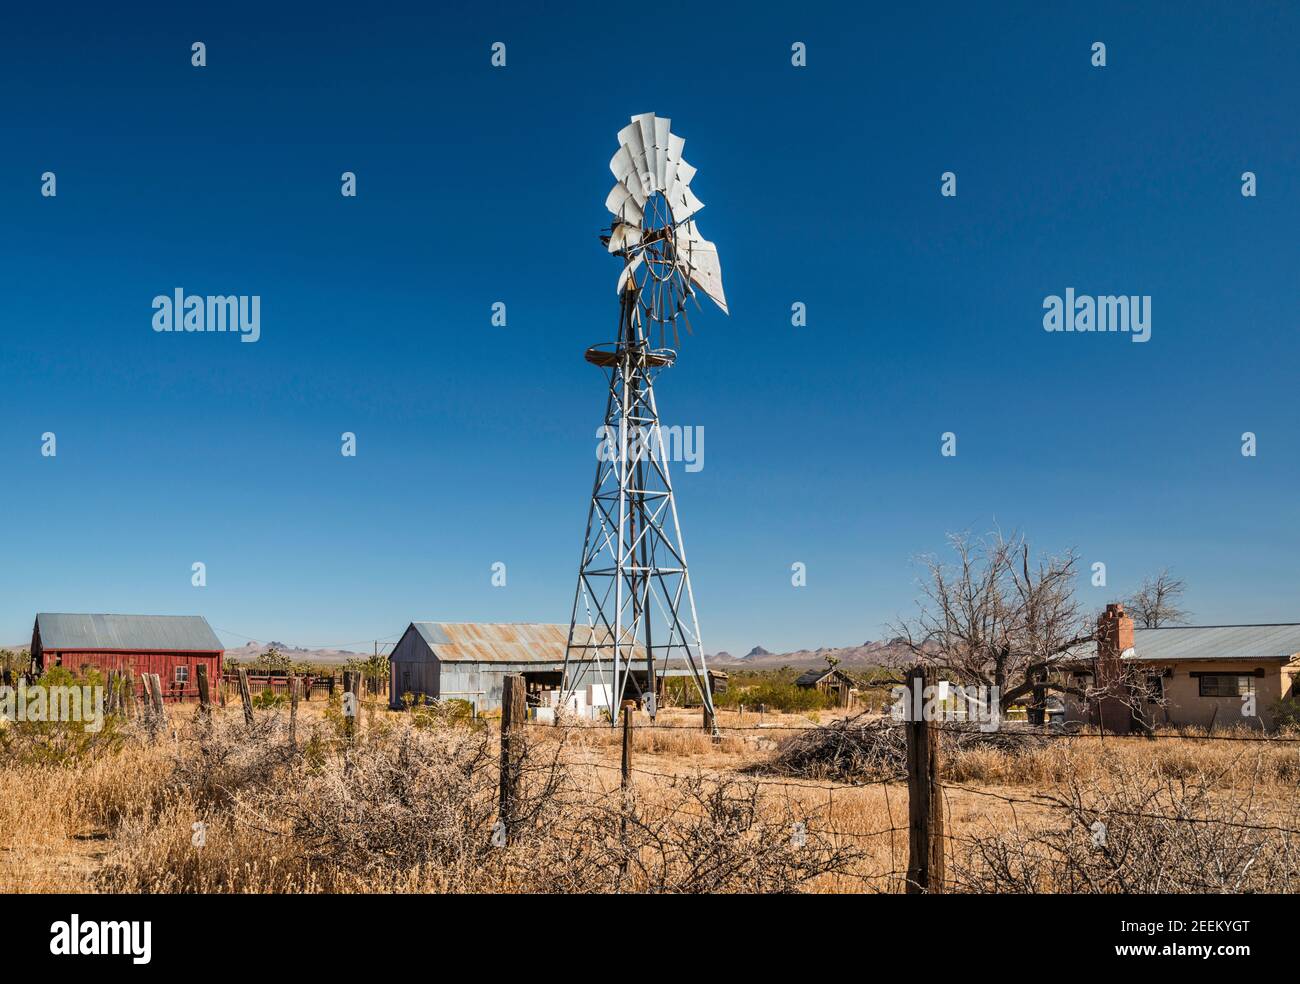 Pompa d'acqua stile Aermotor al ranch presso il sito di Lanfair, Lanfair Valley, Mojave National Preserve, California, USA Foto Stock